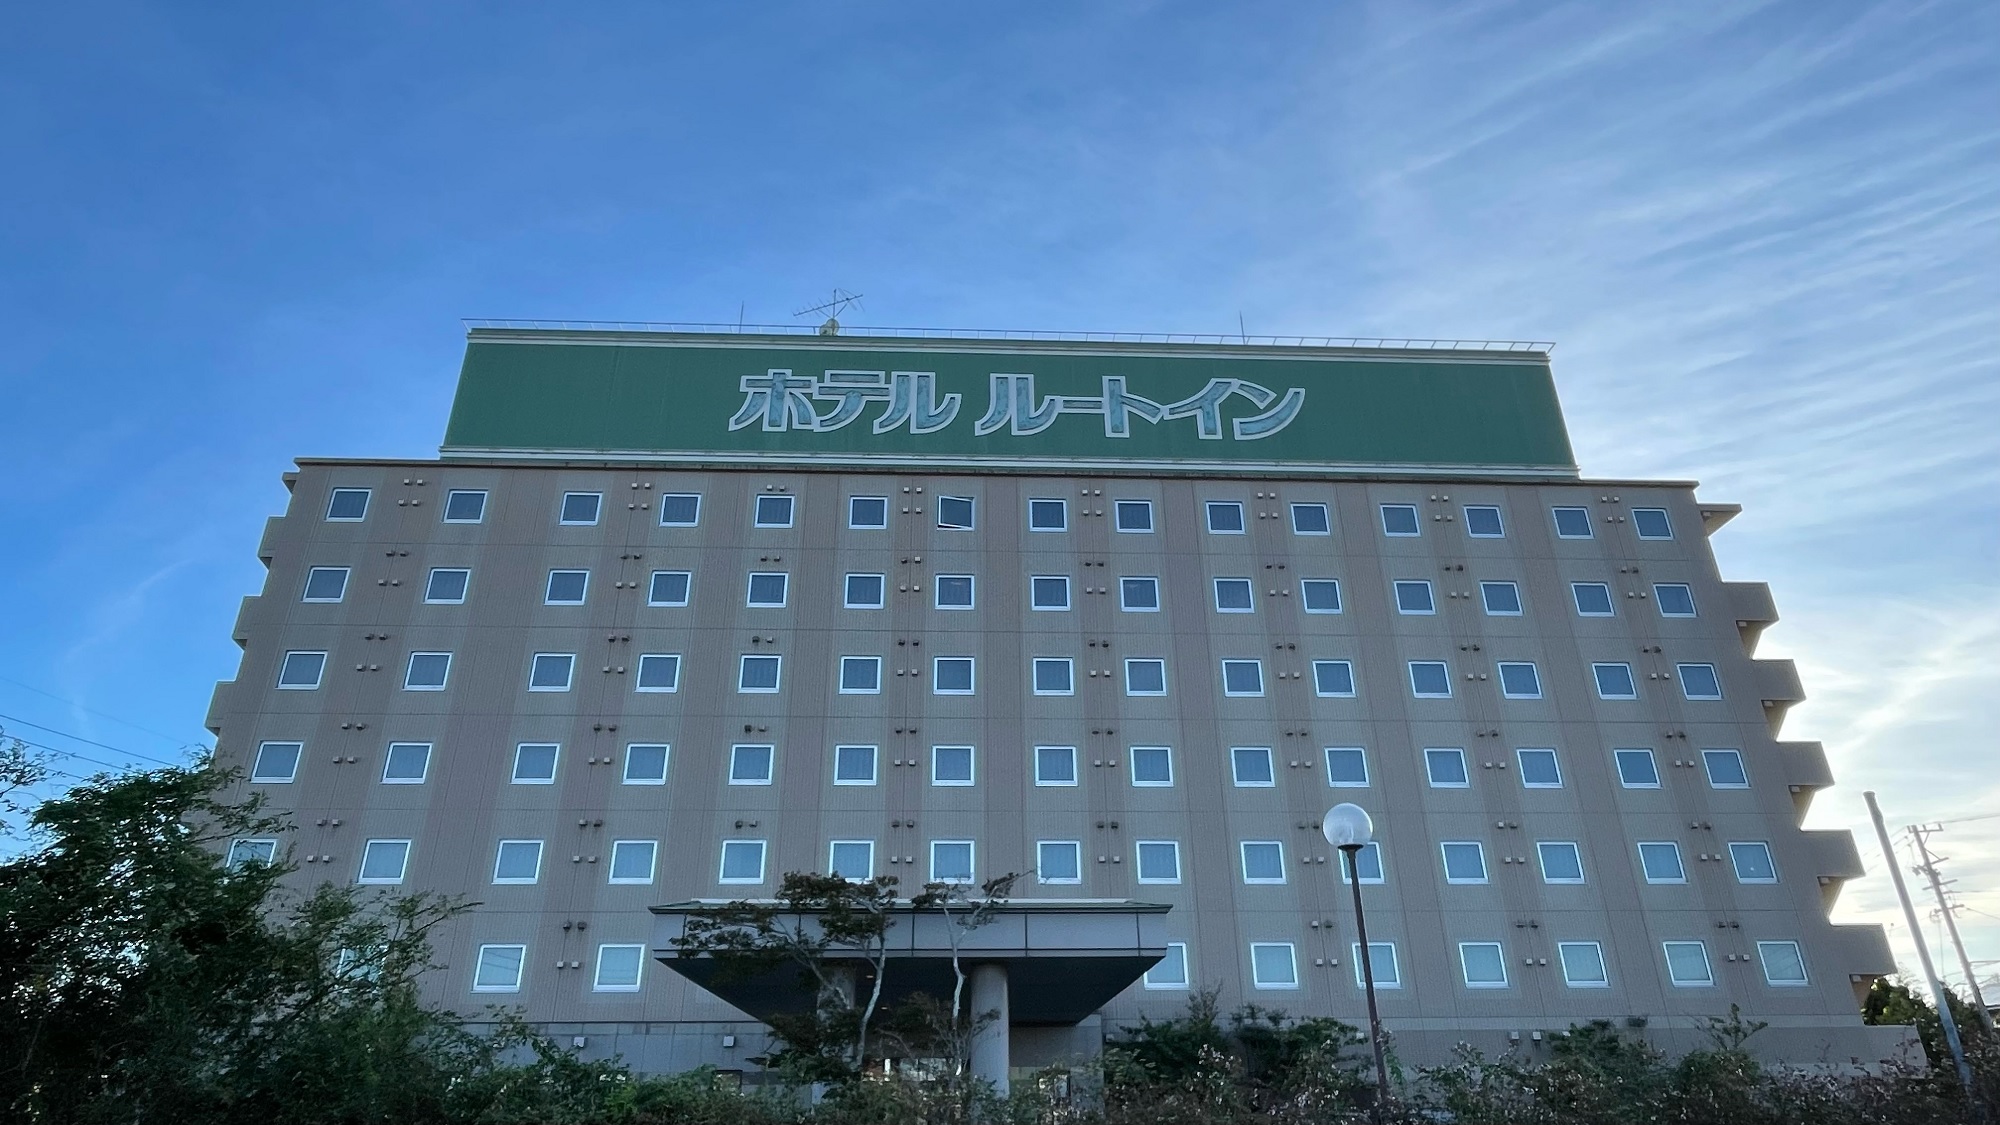 濱松西交流道 Route-Inn 飯店